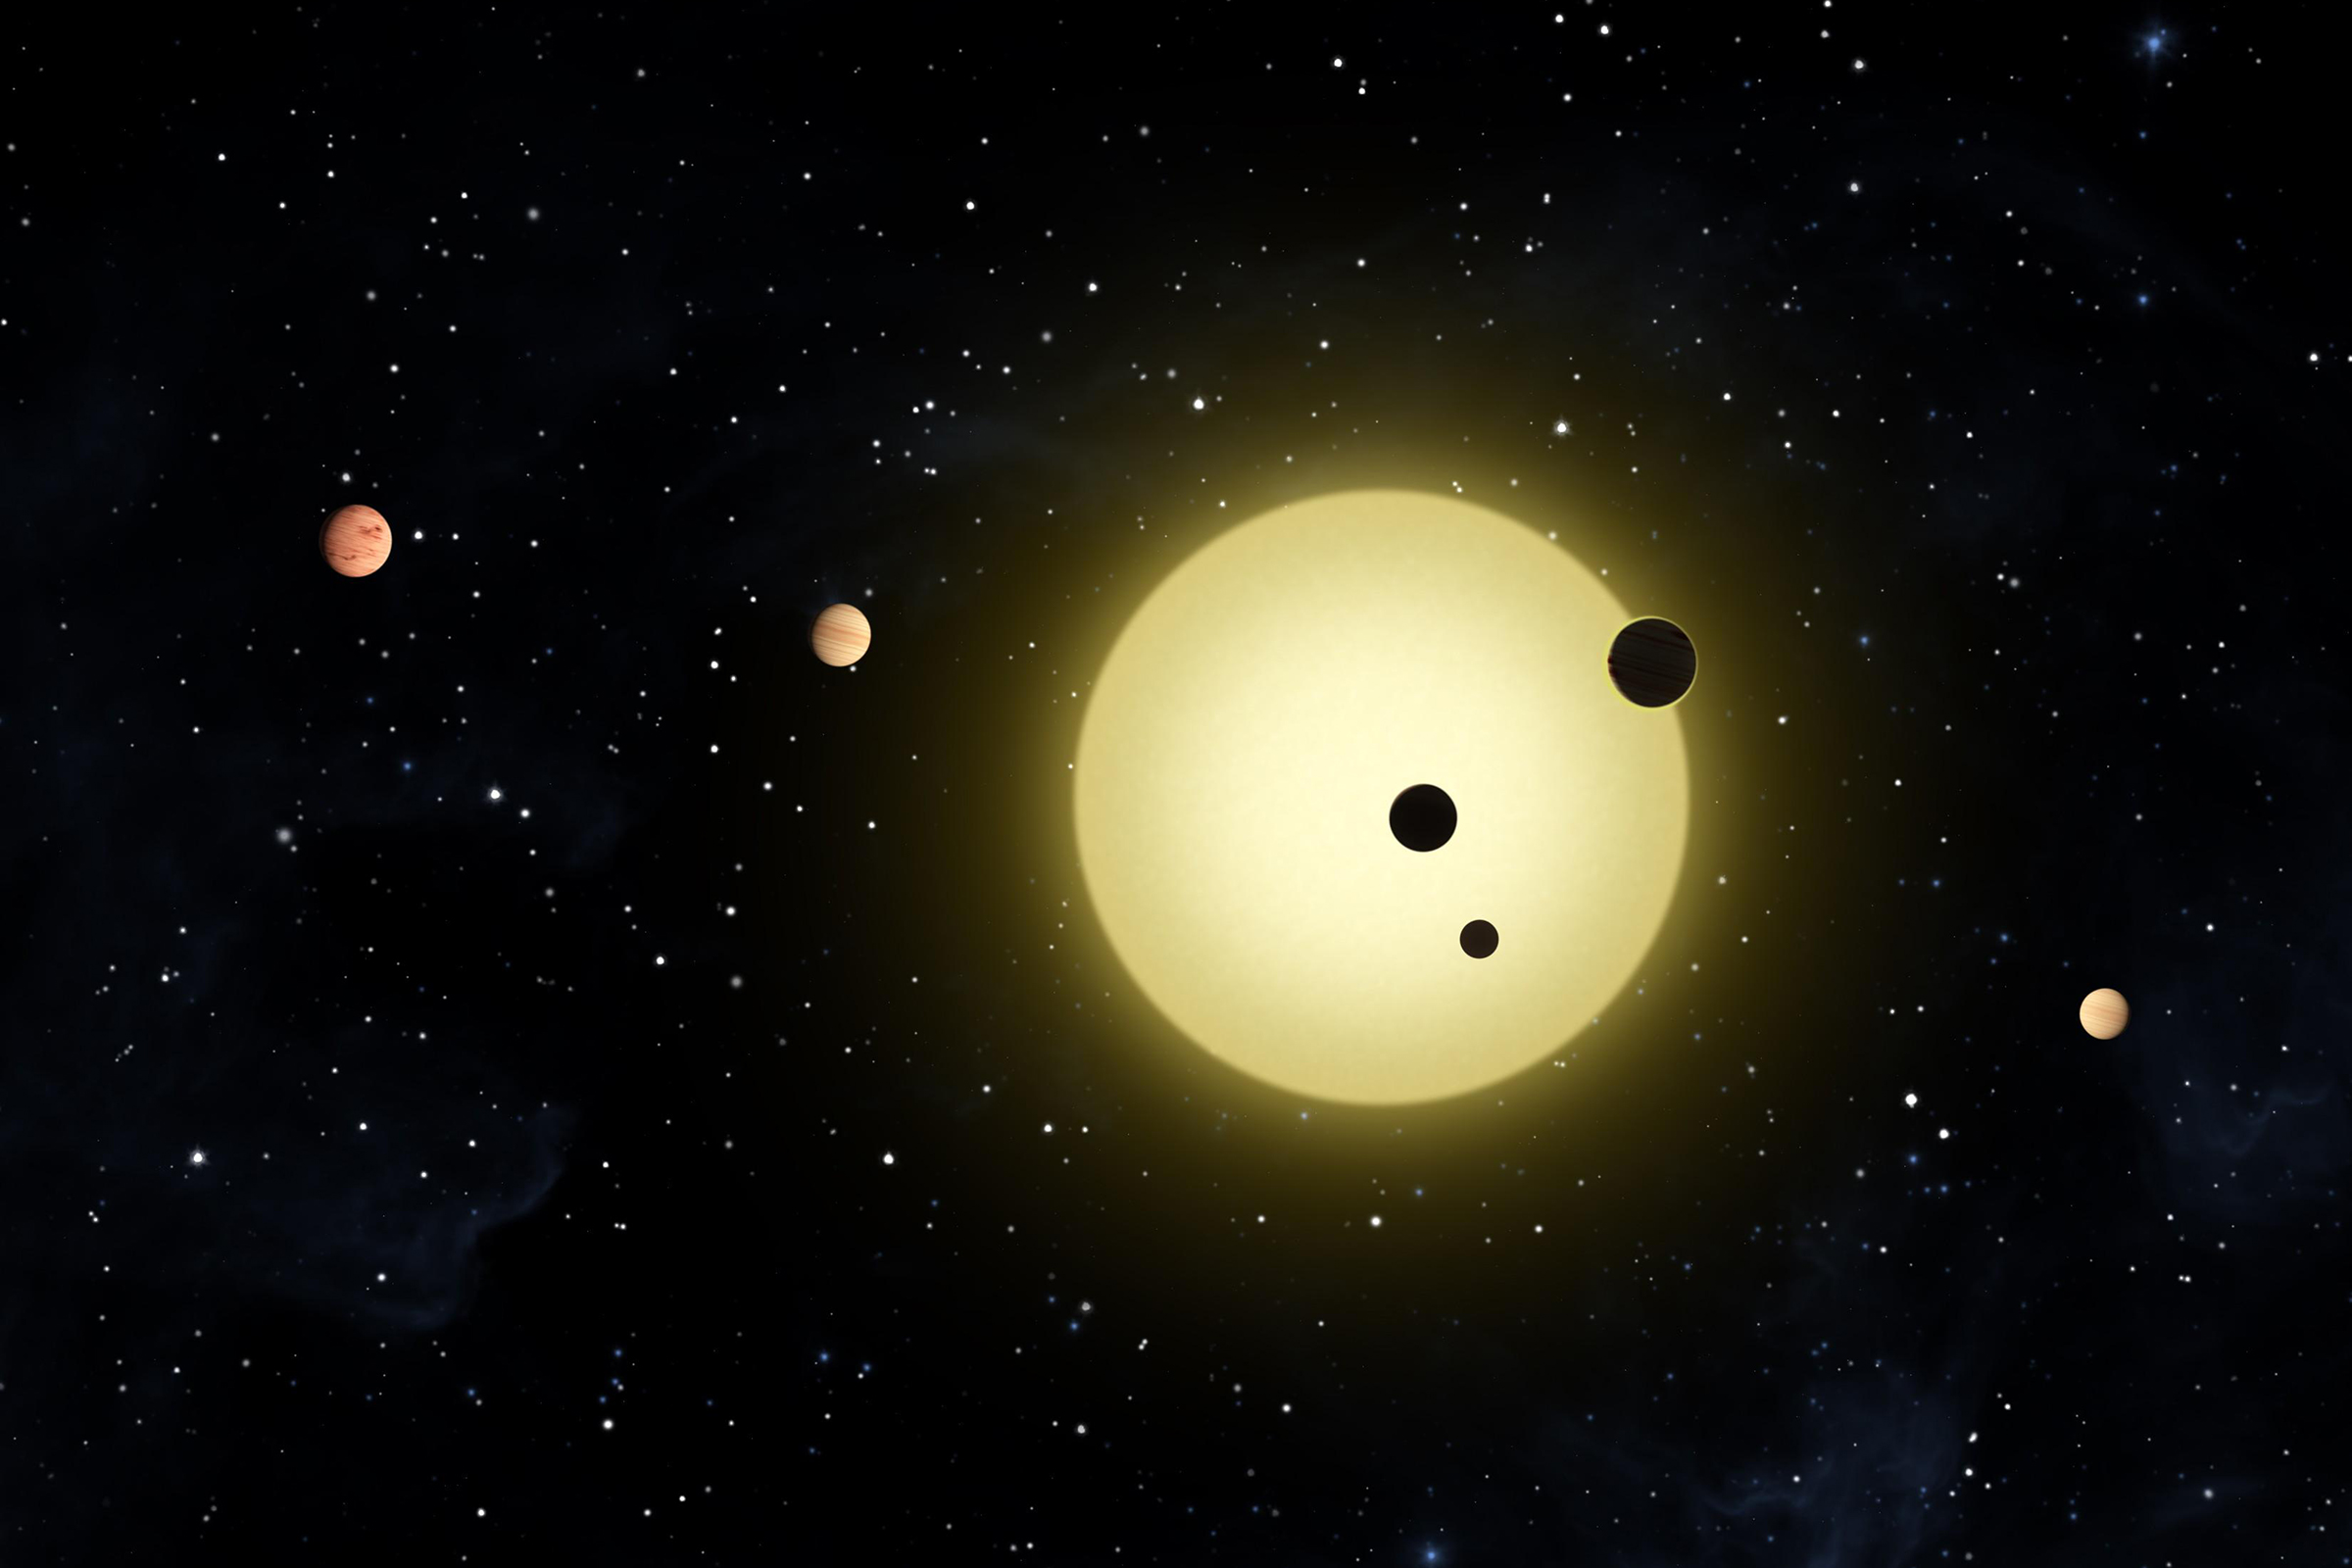 Это первая система, открытая космическим телескопом Kepler в 2011 году. Вокруг звезды вращаются несколько планет, которые названы в алфавитном порядке, начиная с внутренних: b, c, d, e, f, и g. По своим характеристикам звезда Kepler-11 напоминает Солнце и весит 0,961 его массы. Она старше Солнца примерно в два раза.
